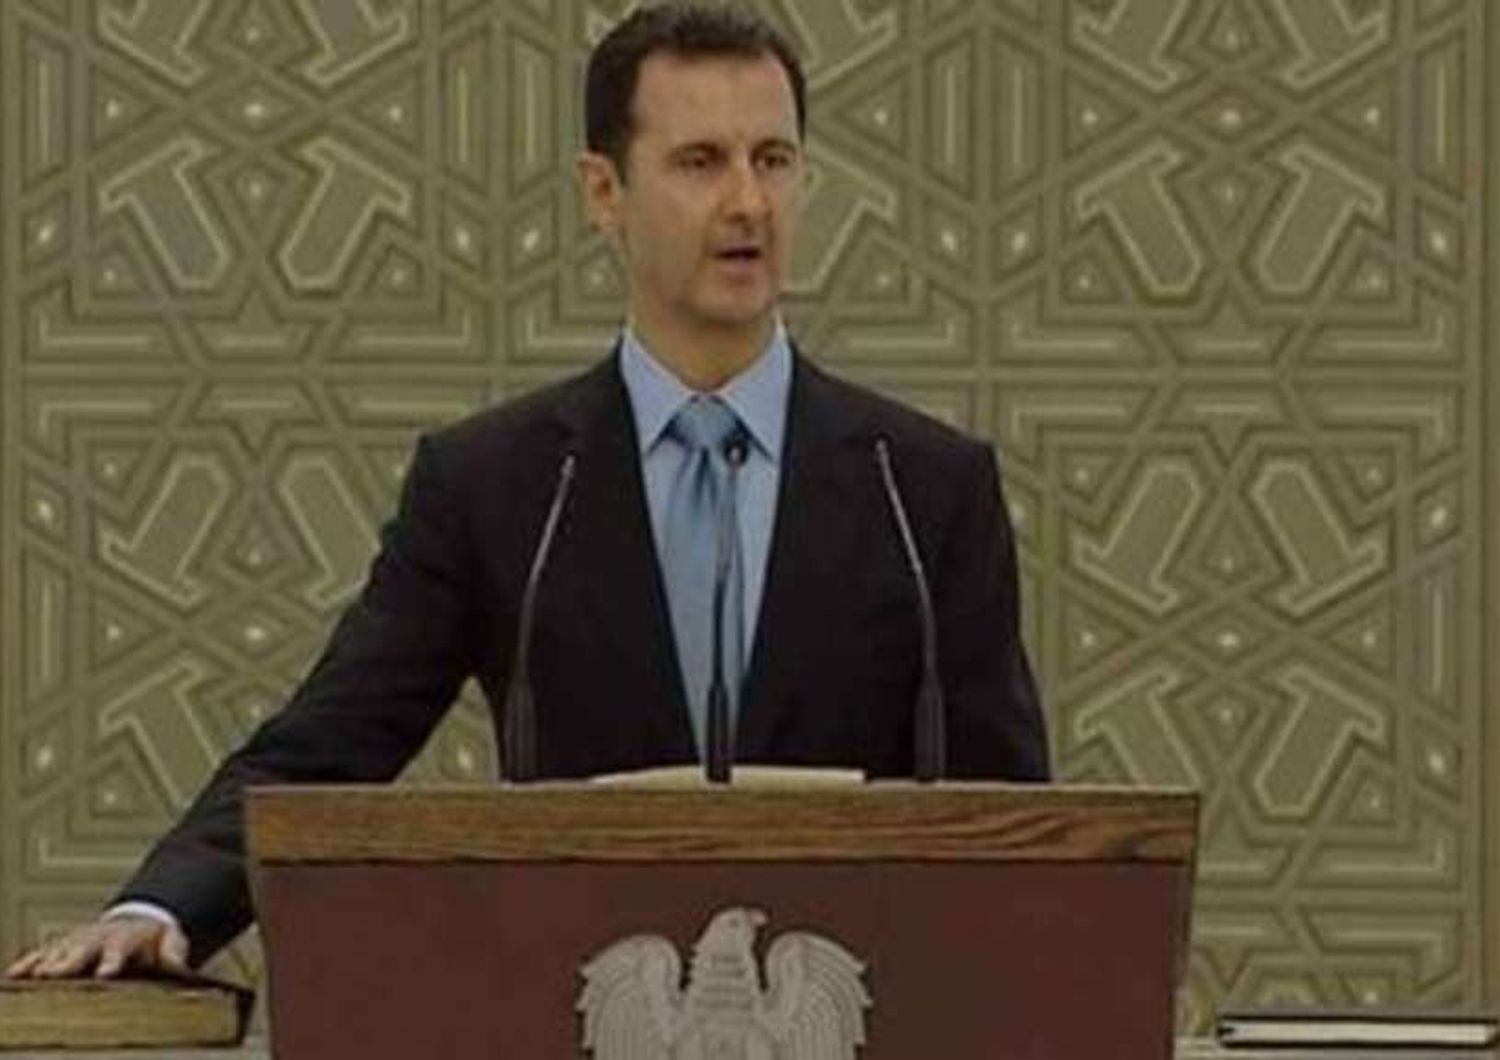 Terzo mandato per Assad, Occidente paghera' appoggio terrorismo